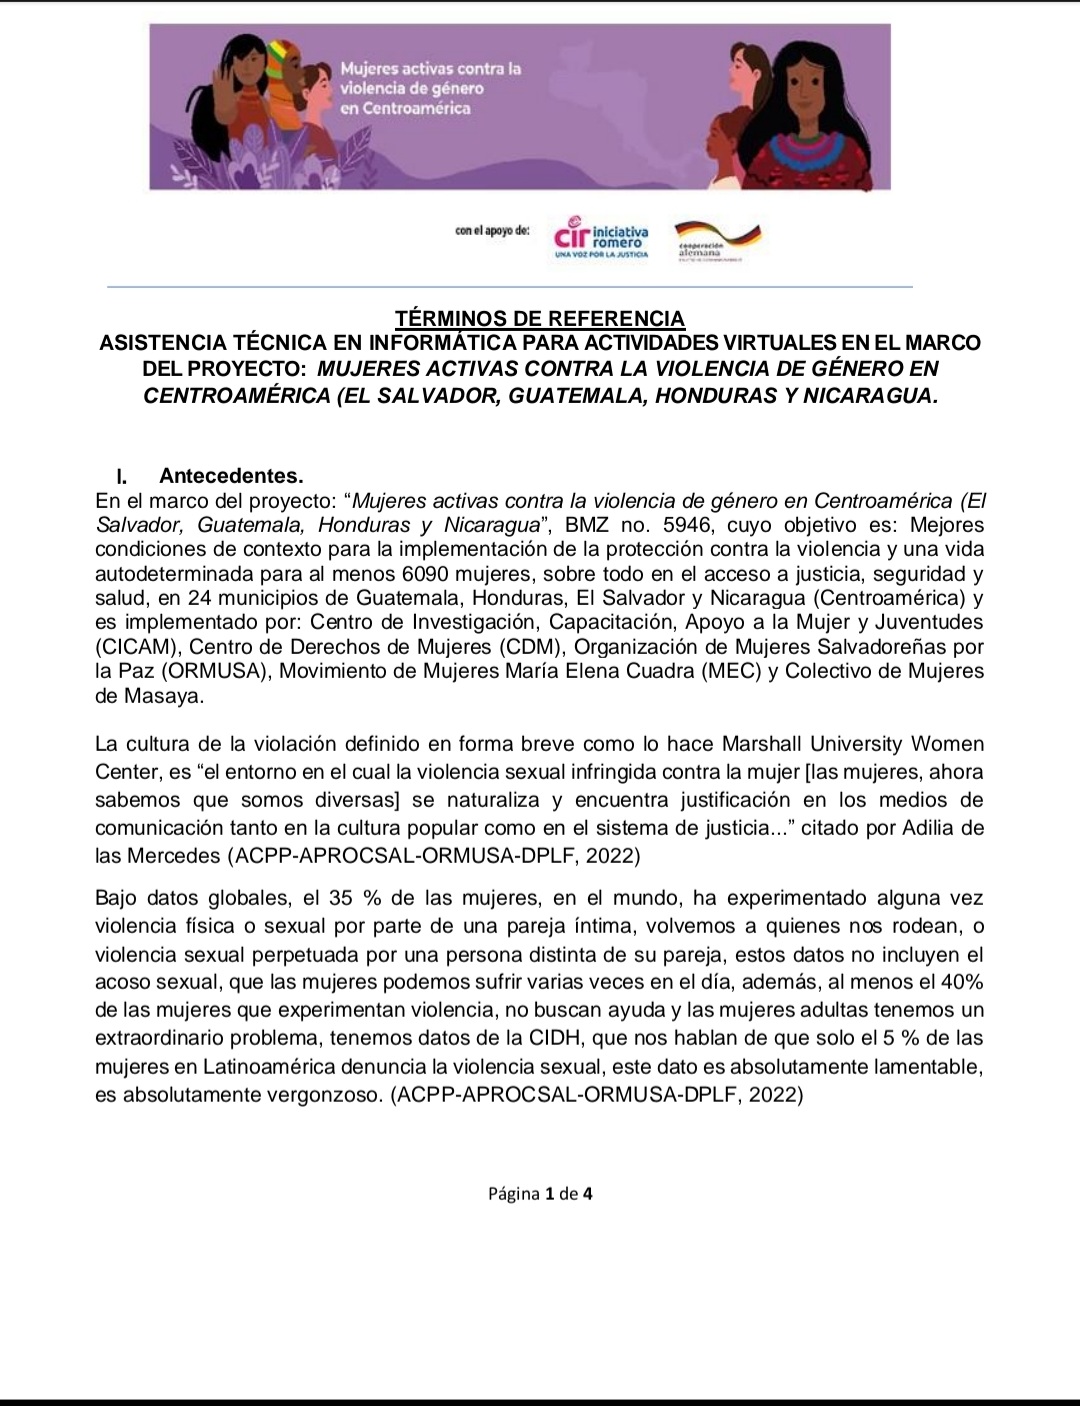 Asistencia técnica en informática  para actividades virtuales en el marco del proyecto: Mujeres activas contra la violencia de género en Centroamérica   (El Salvador, Guatemala, Honduras y Nicargaua).